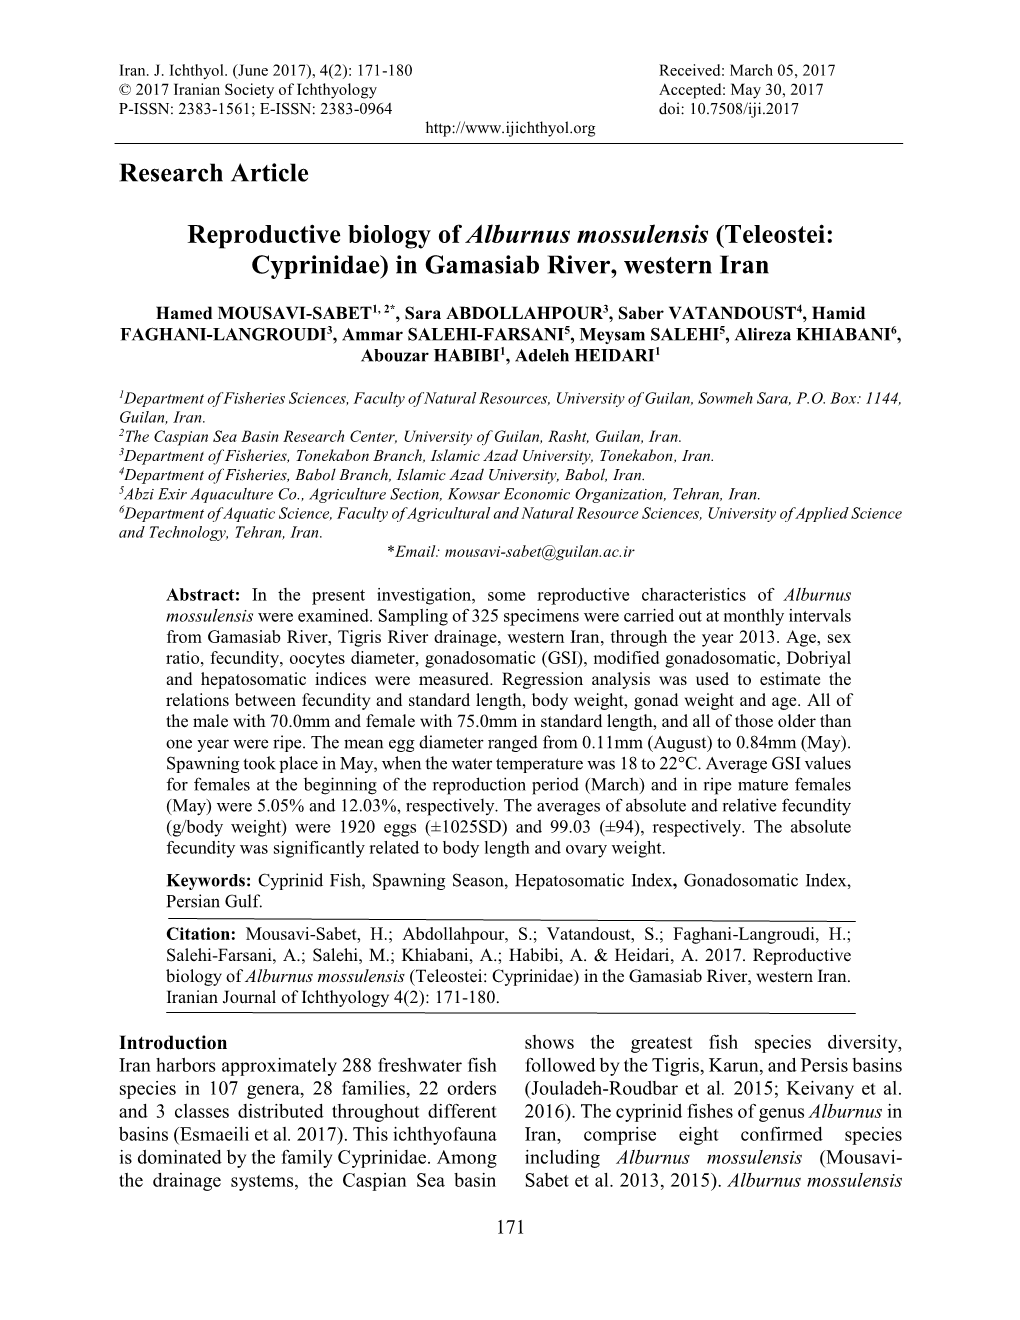 Research Article Reproductive Biology of Alburnus Mossulensis